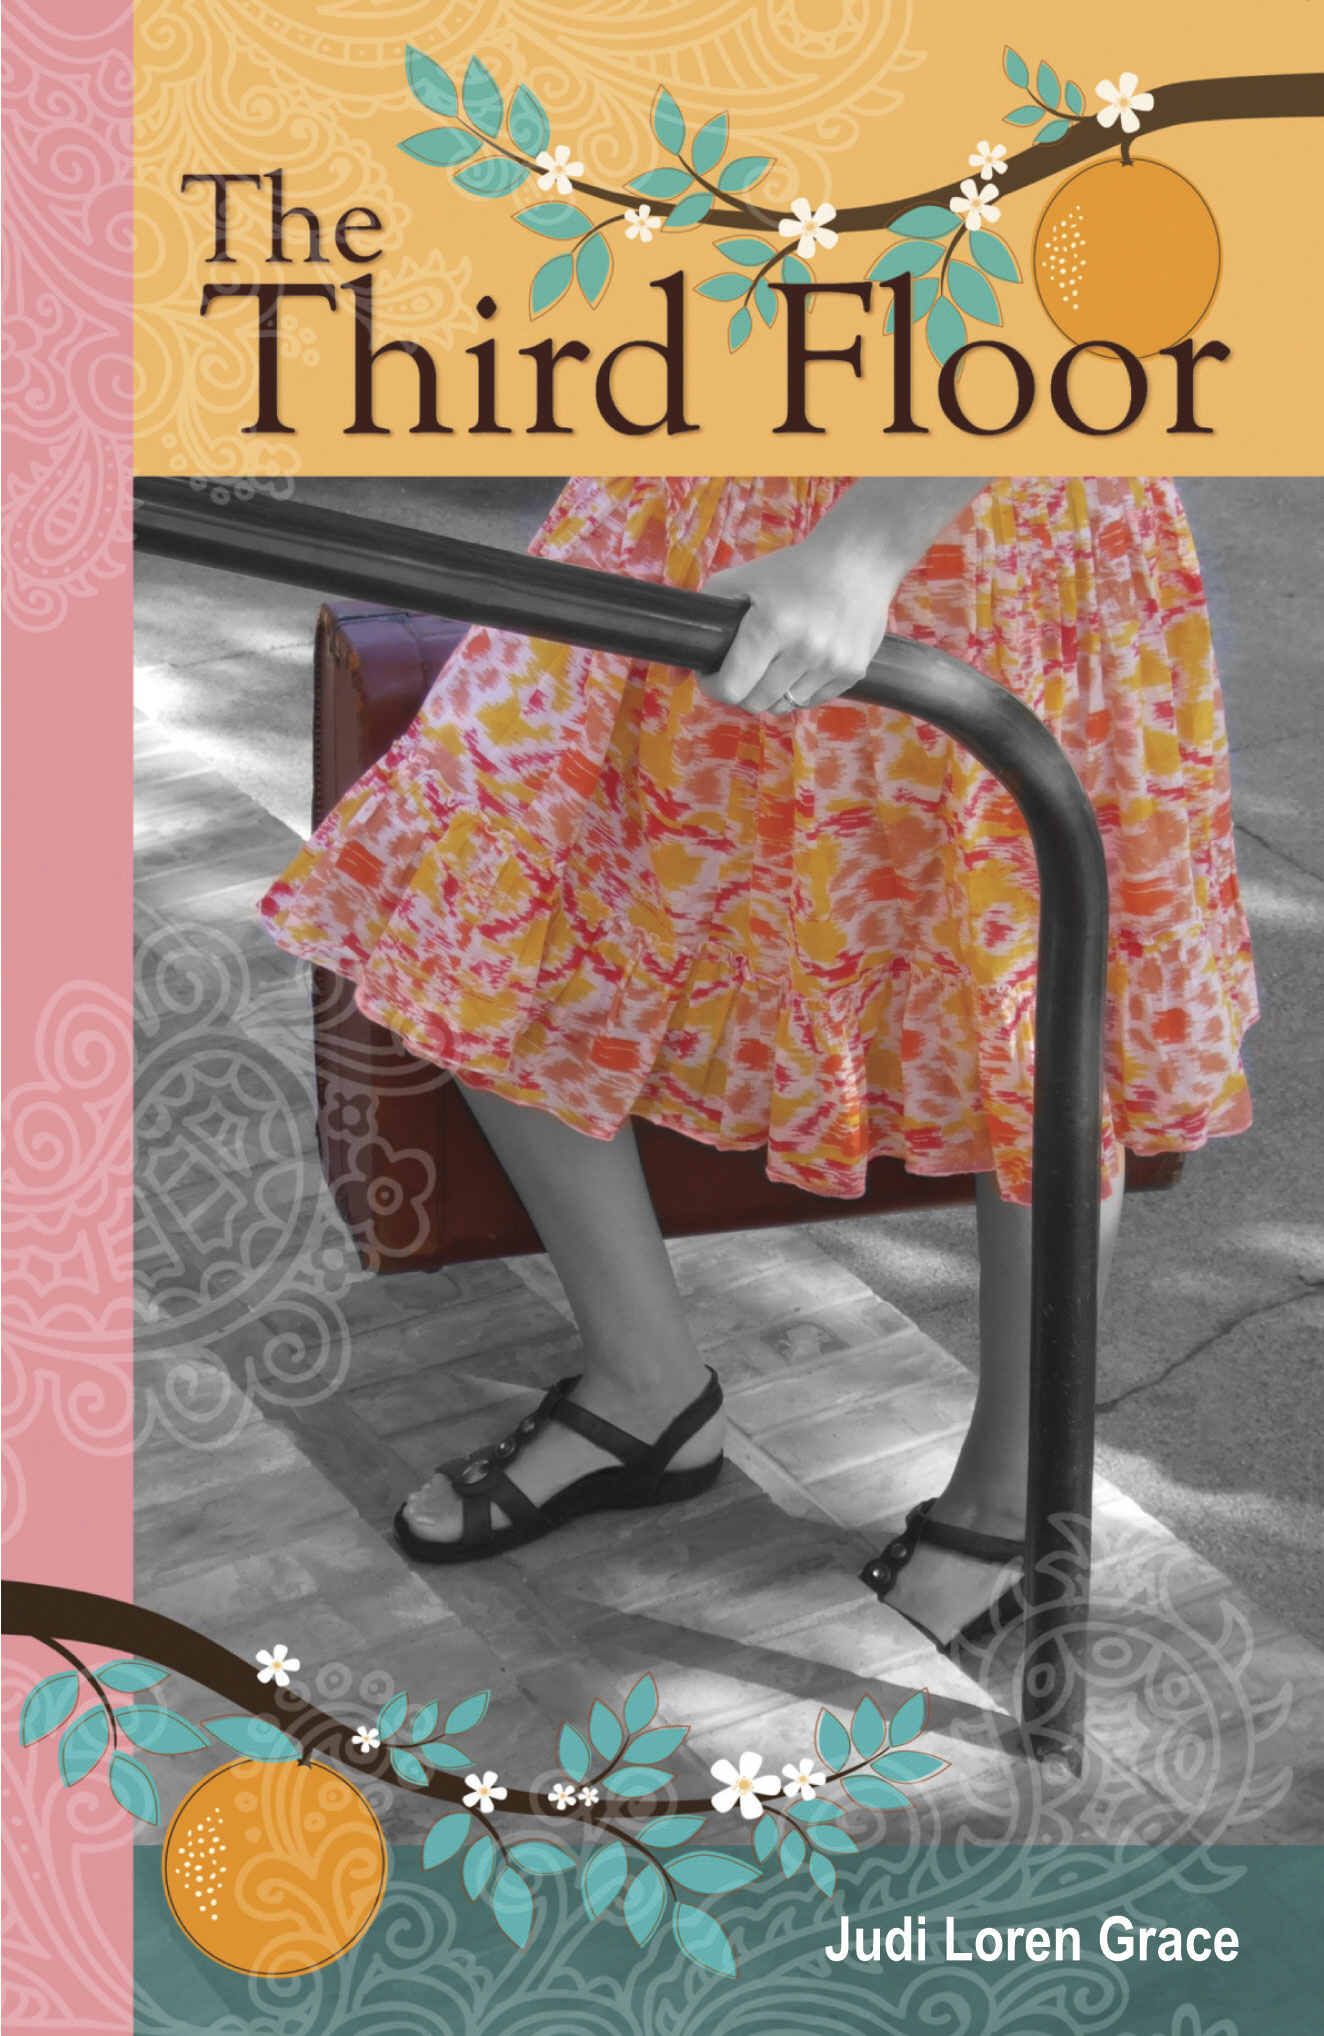 The Third Floor by Judi Loren Grace